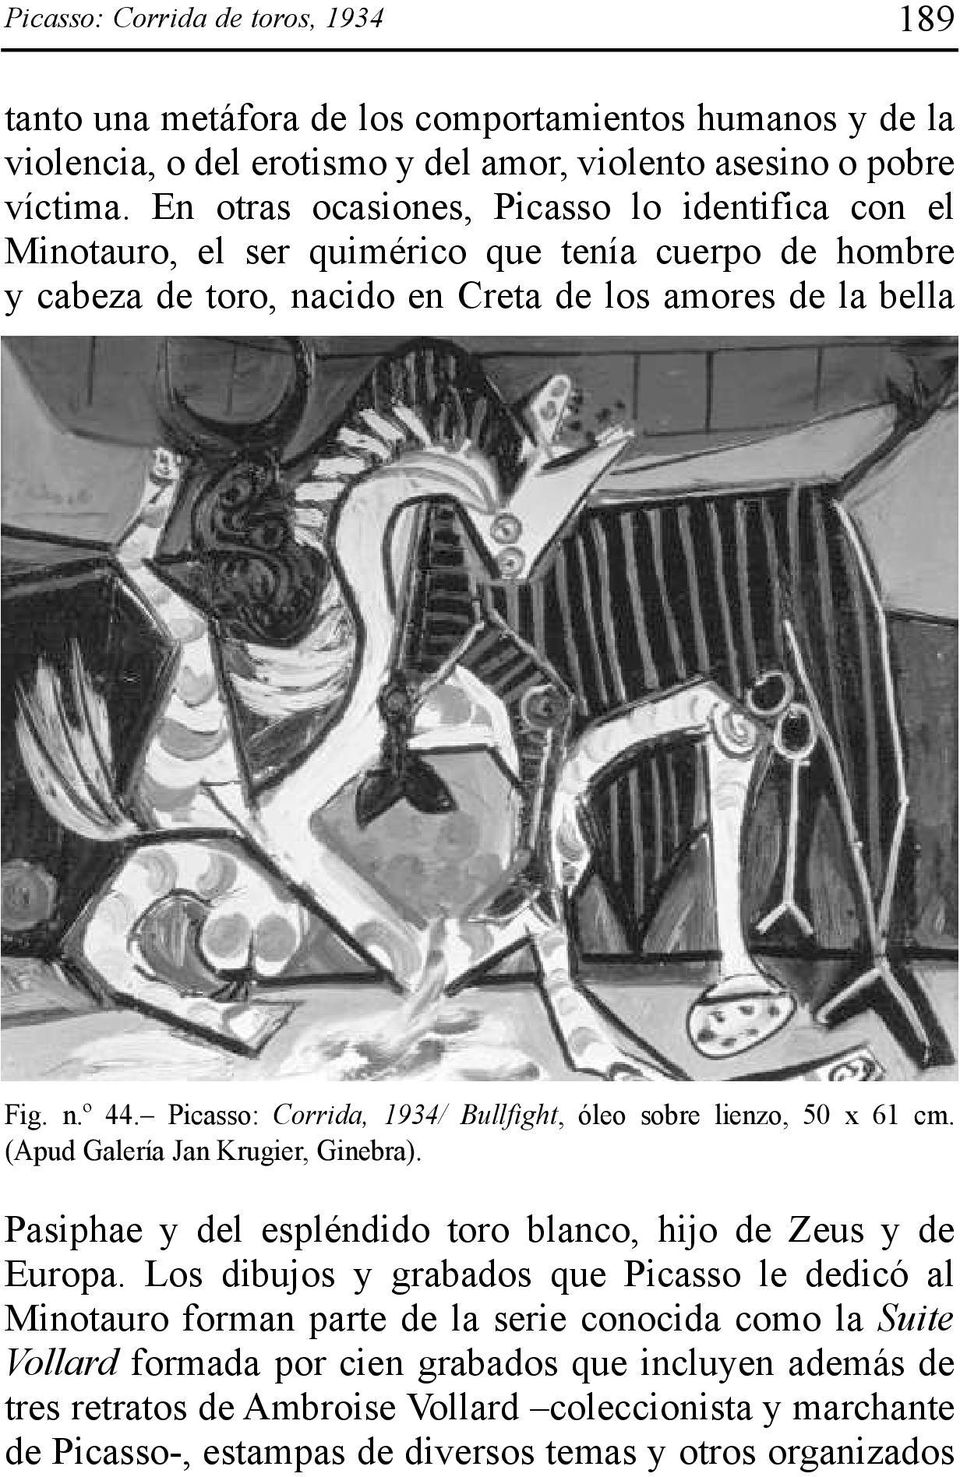 Picasso: Corrida, 1934/ Bullfight, óleo sobre lienzo, 50 x 61 cm. (Apud Galería Jan Krugier, Ginebra). Pasiphae y del espléndido toro blanco, hijo de Zeus y de Europa.